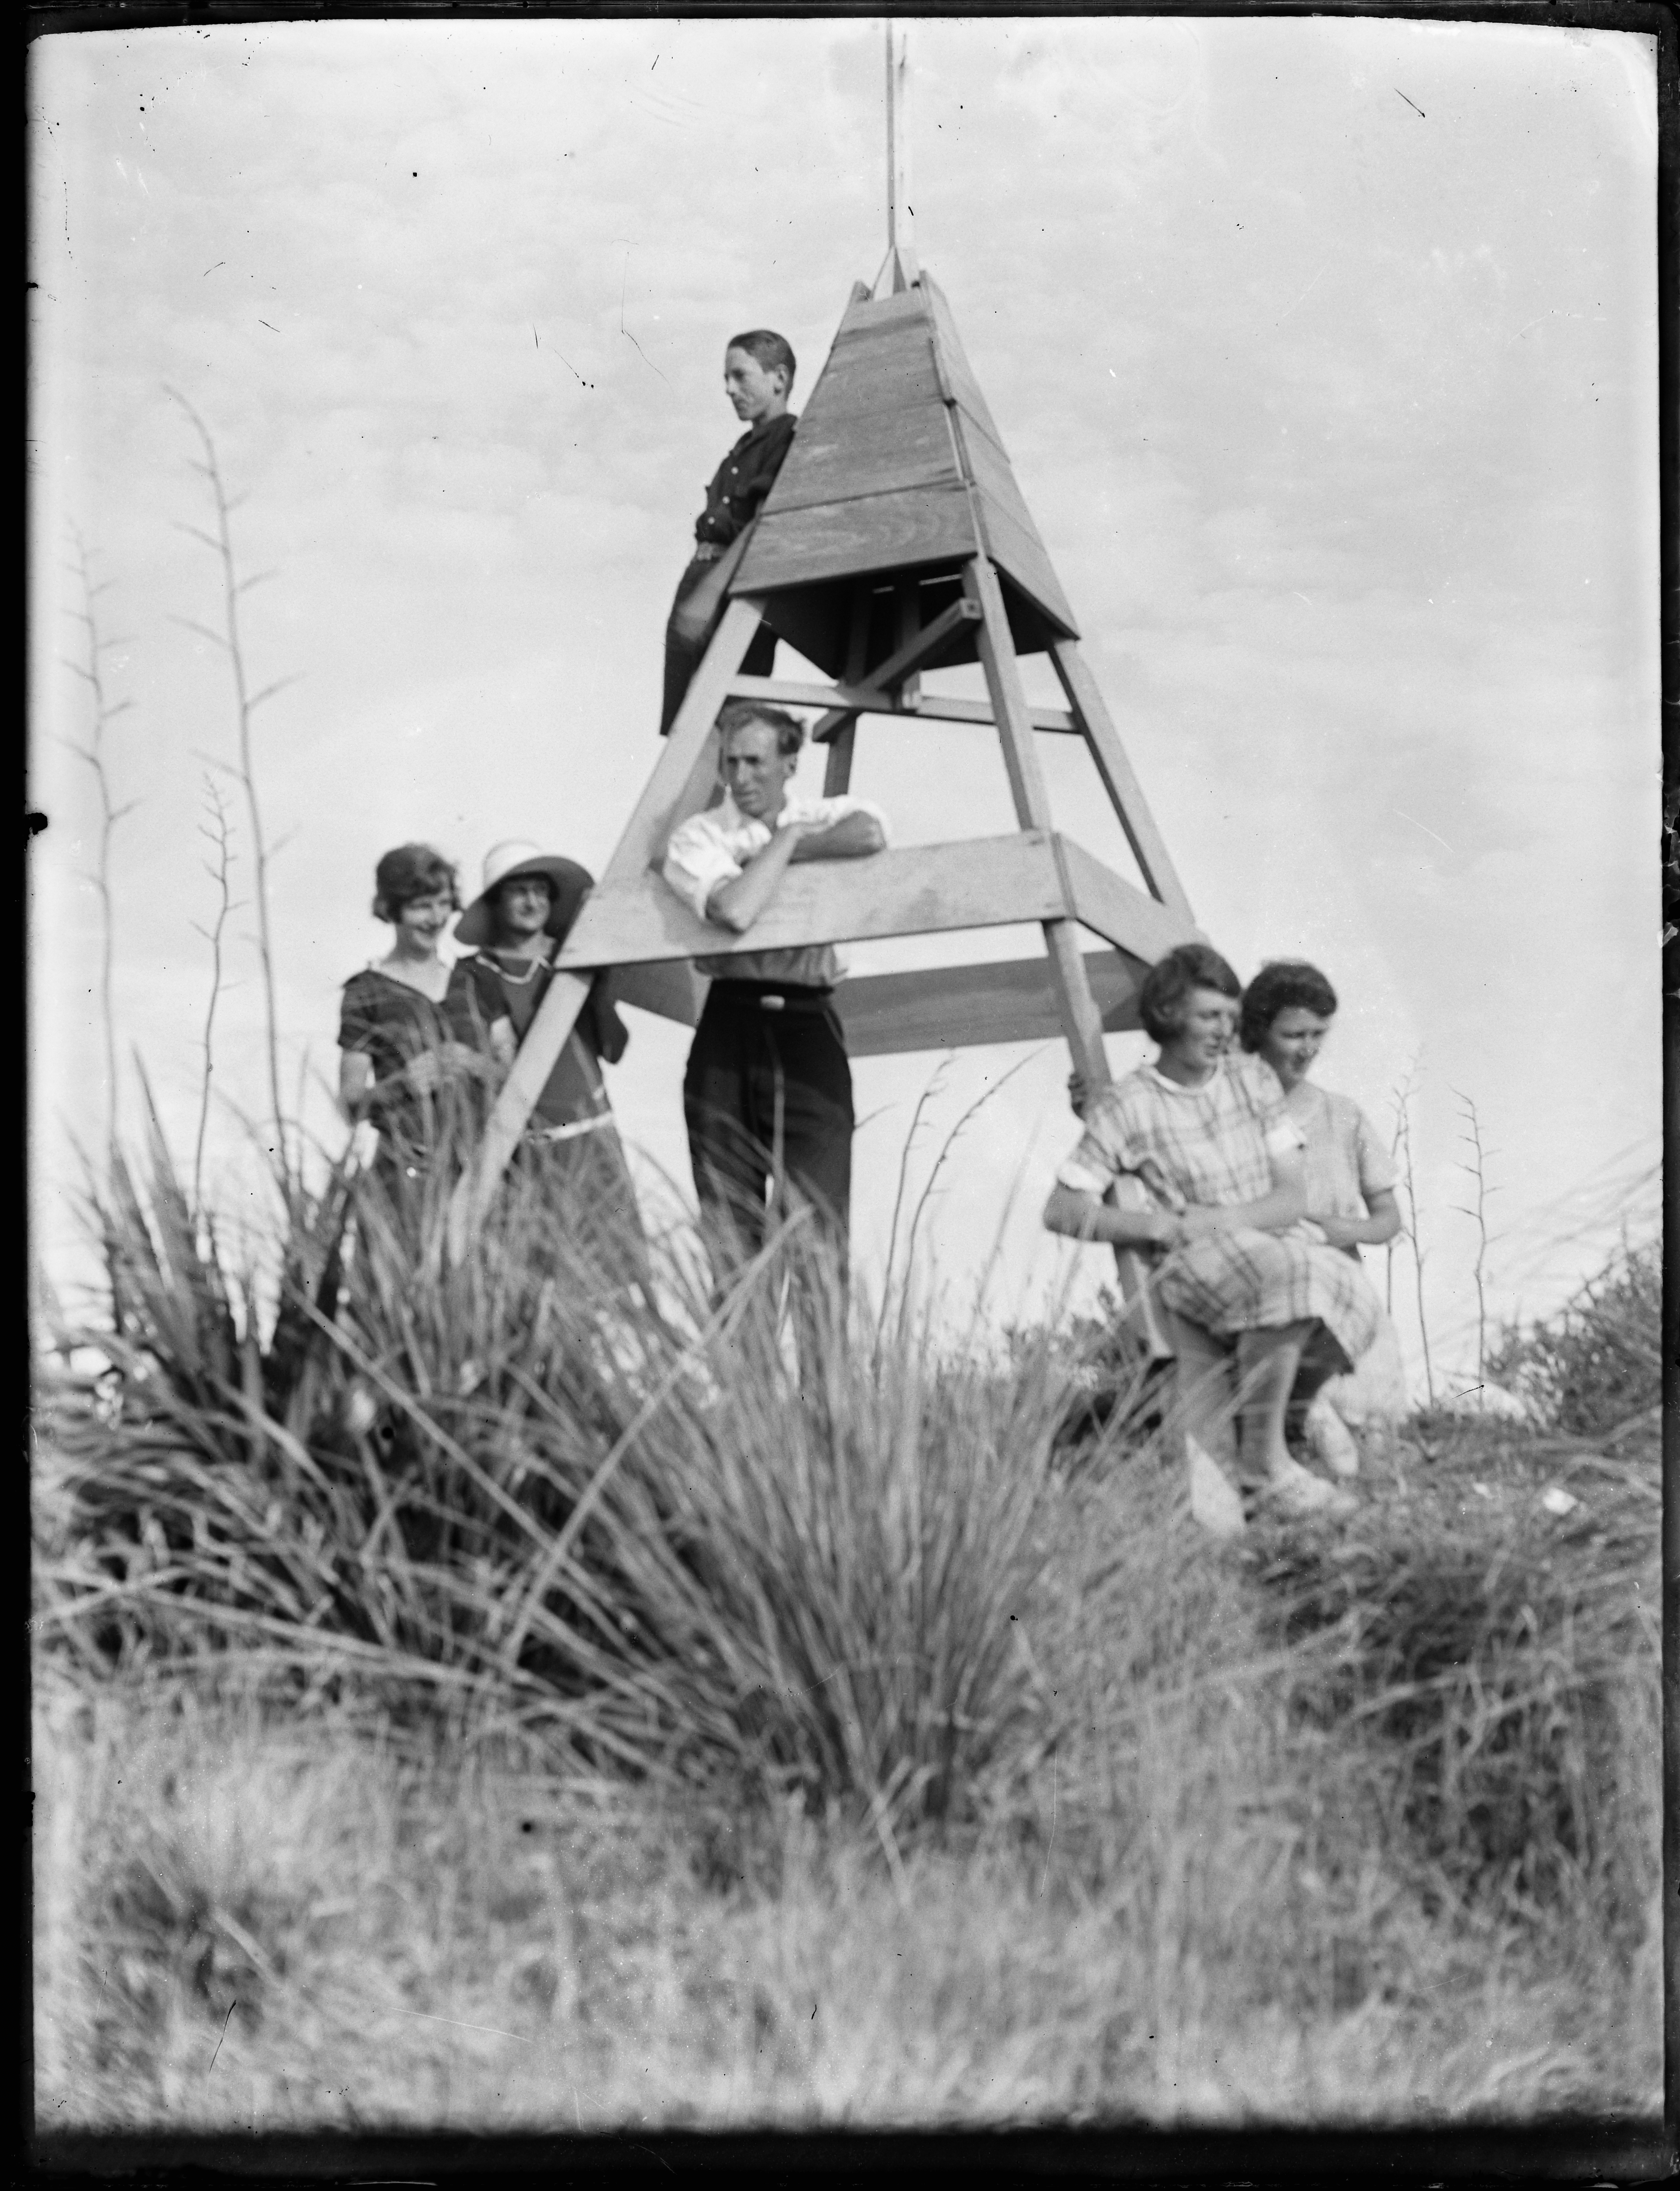 Auckland Libraries Heritage Collection 743-9343. Photographer Albert Hague Jones. Group at Whatipu trig including Anne Jones (nee Cooper), Gladys Cooper, Burt Jones and Clifford Jones. 1920s.